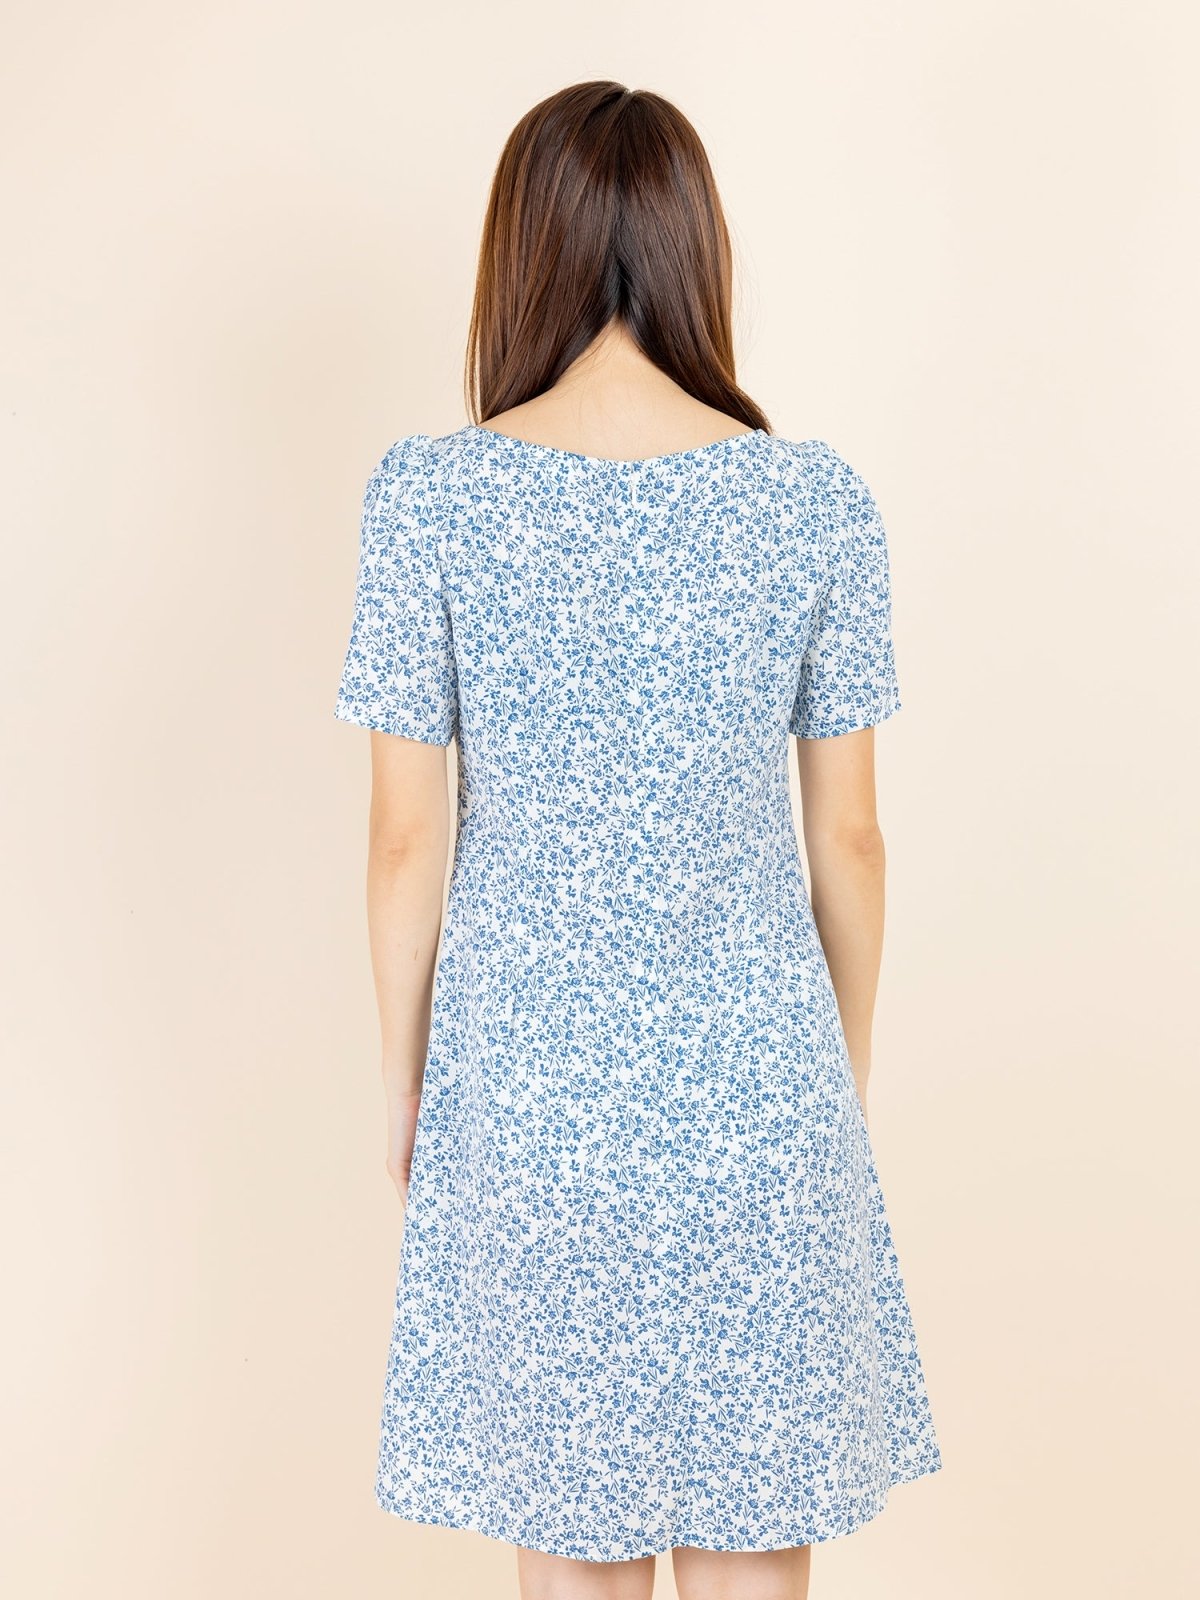 Kalyn Floral Shirred Dress - DAG-DD9447-22IvoryBluePrintF - Ivory Blue Print - F - D'ZAGE Designs